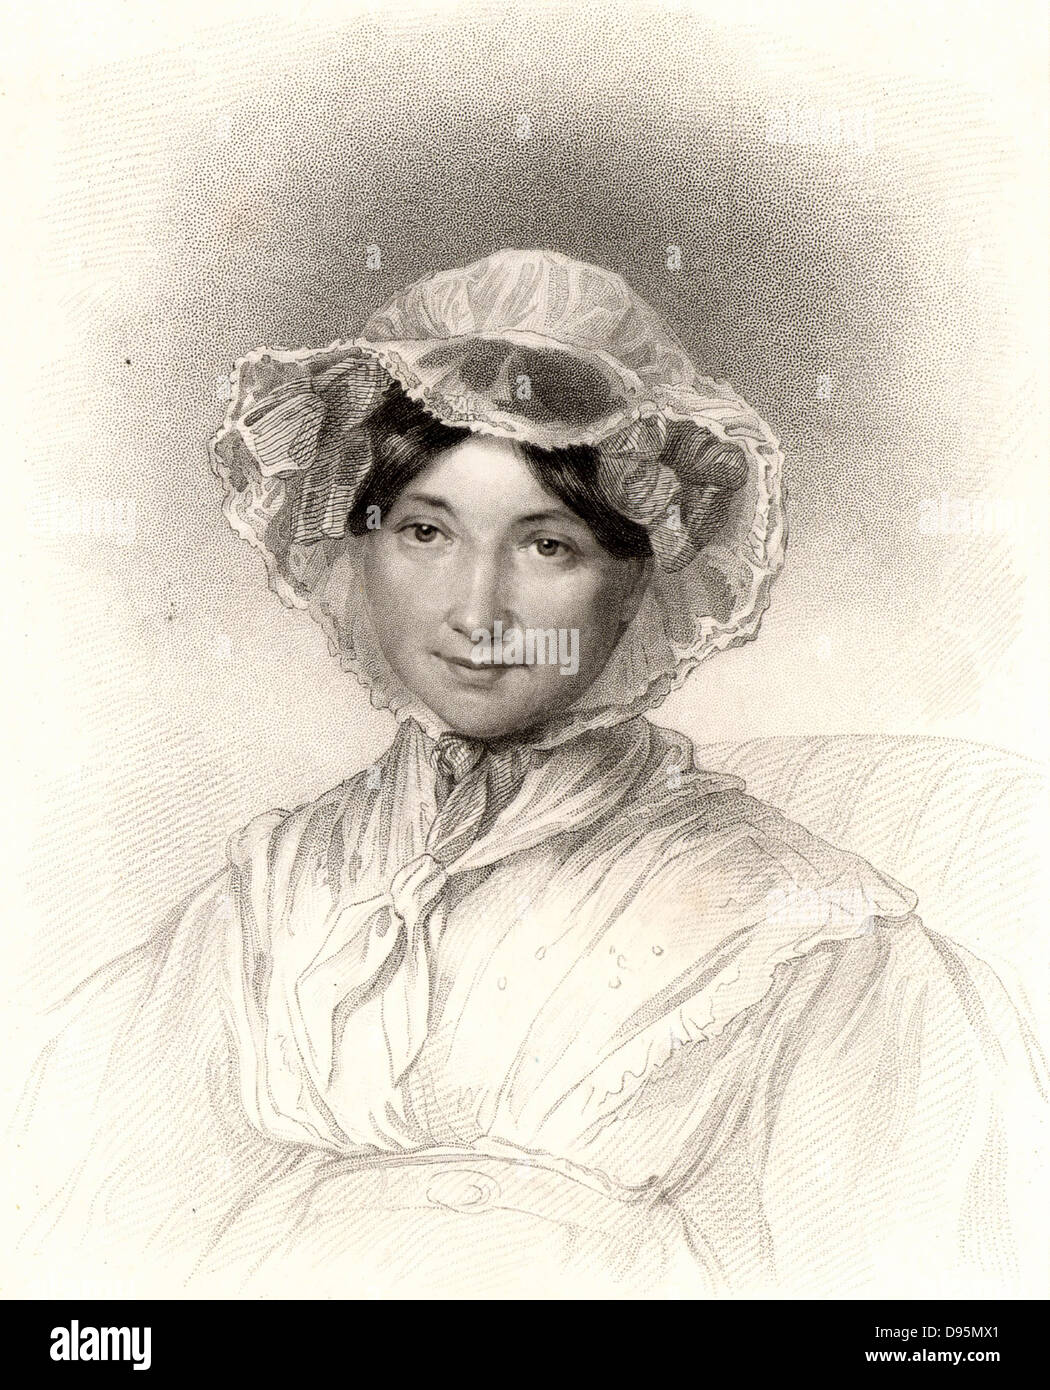 Frances Trollope (geb. Milton - 1780-1863), englischer Schriftsteller und Romancier. Die Mutter der Romancier Anthony Trollope (1815-1882). Gravur veröffentlicht London 1835. Stockfoto